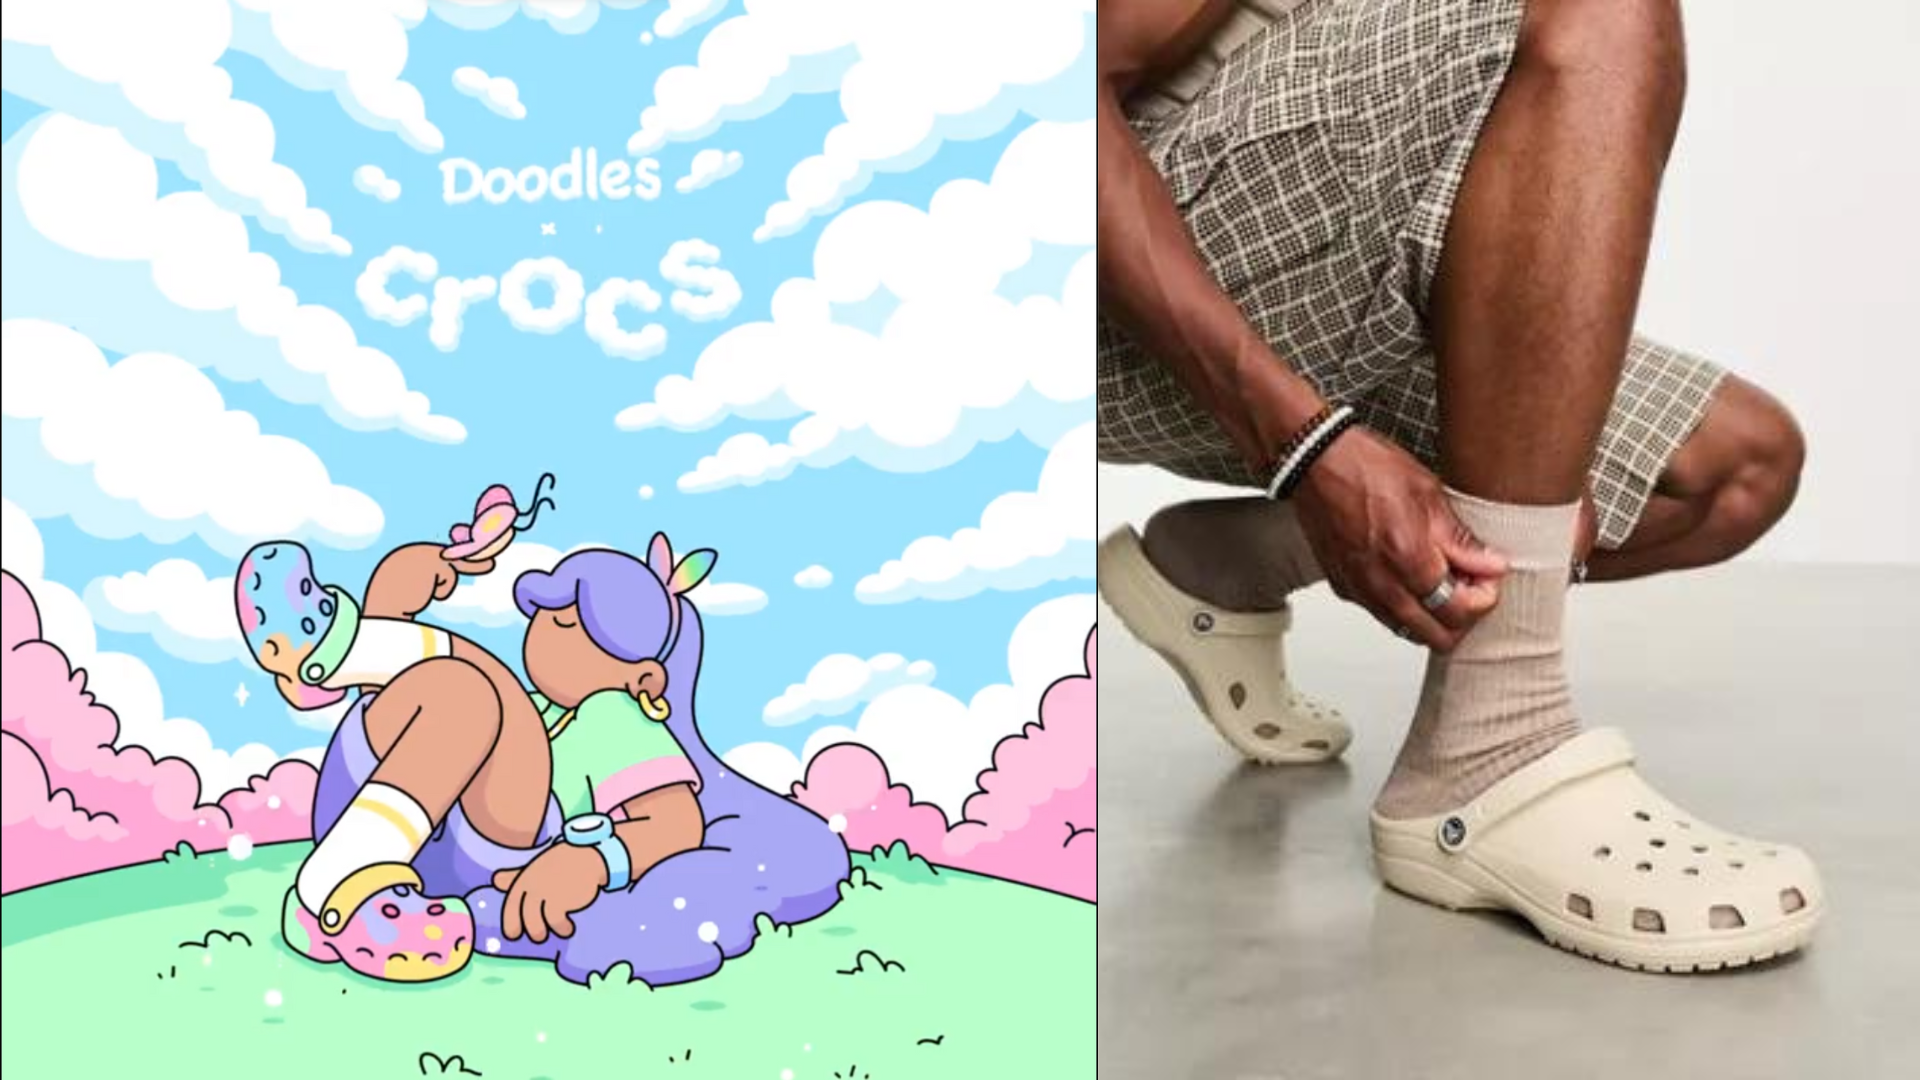 Crocs Meets Web3 With Doodles x Crocs!